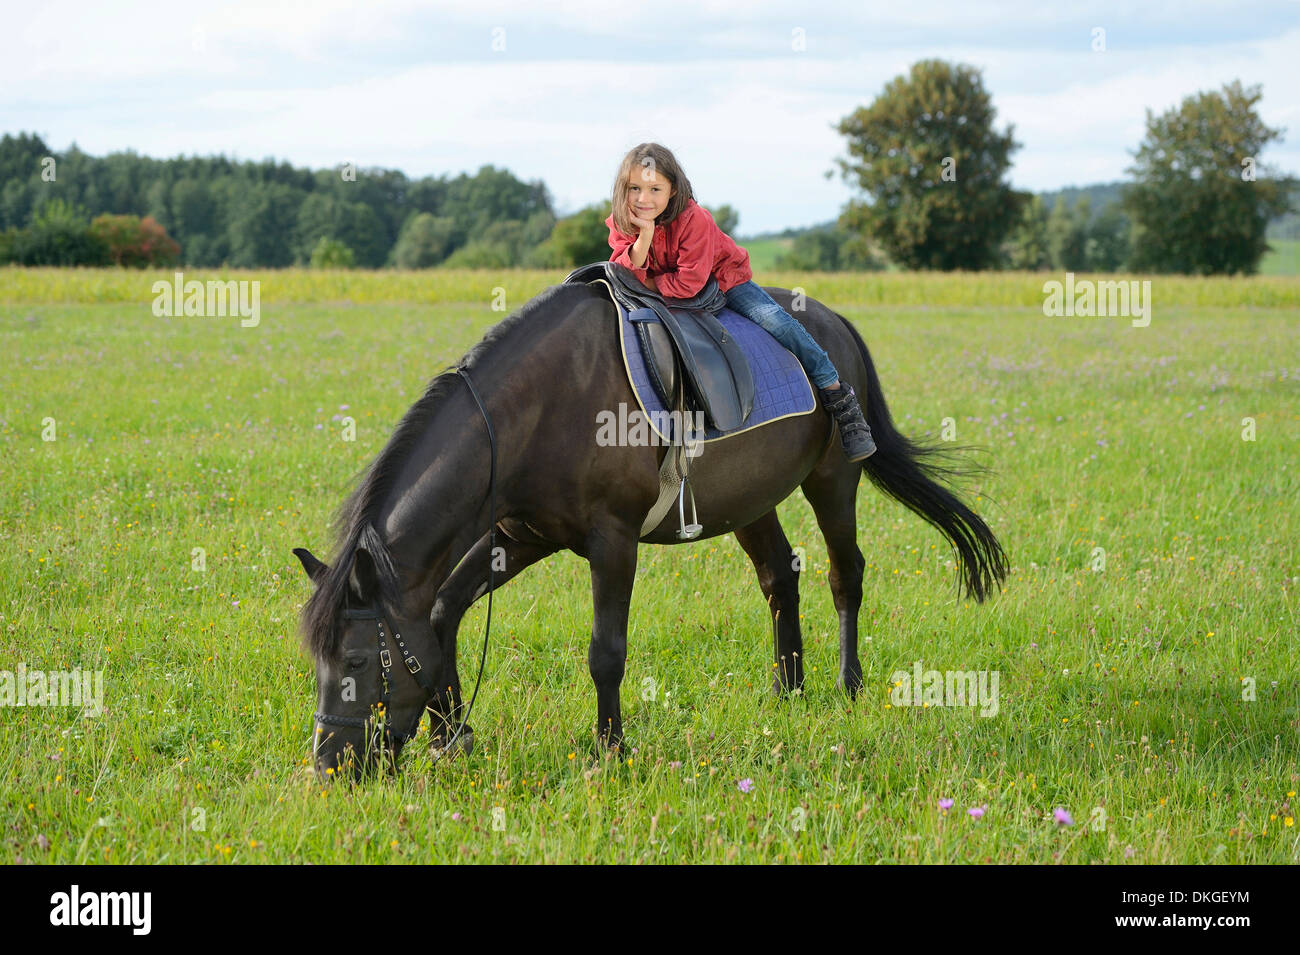 Girl on an Arabian Haflinger on a meadow Stock Photo